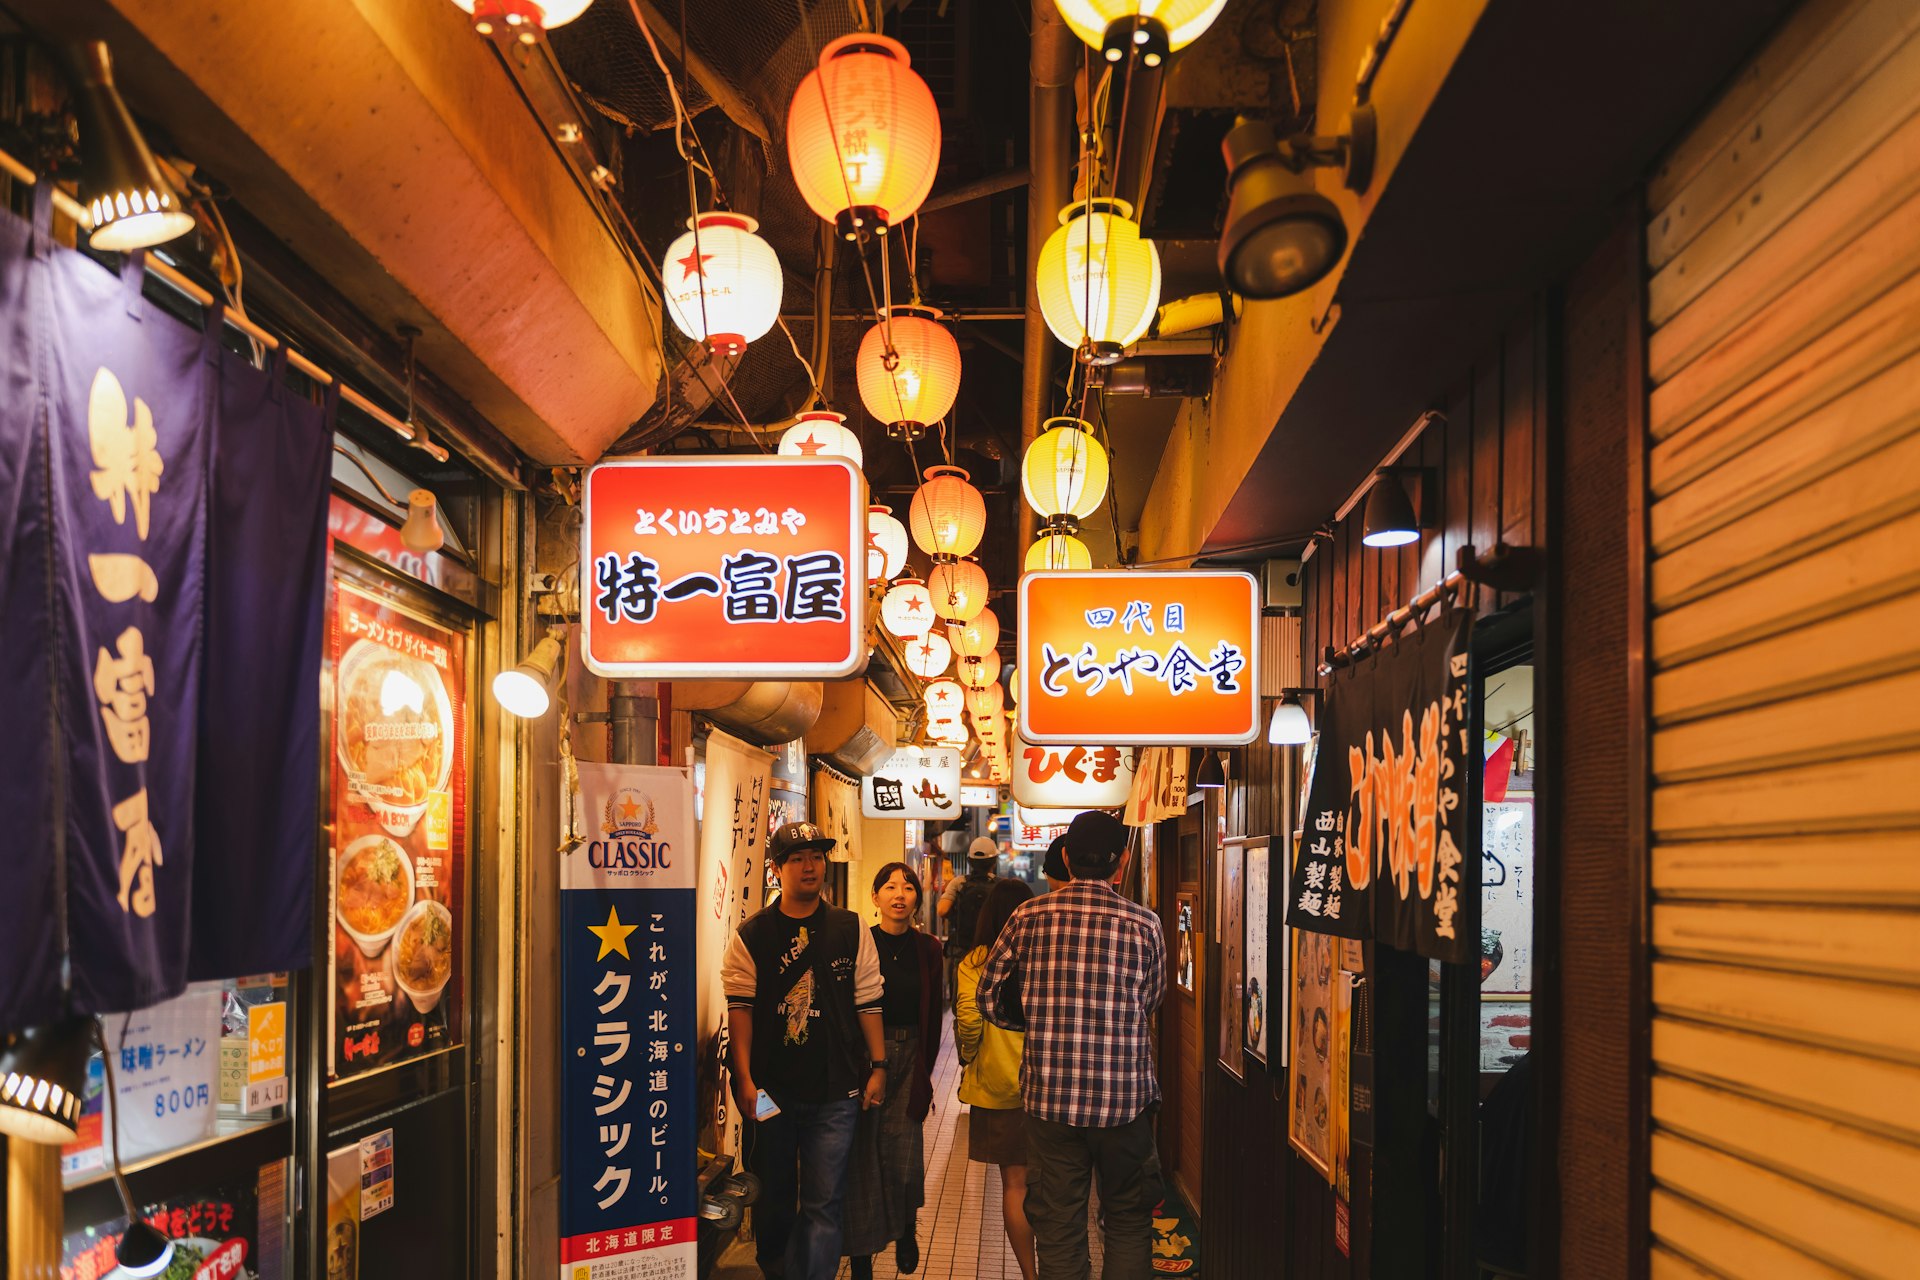 People in an alley packed with ramen restaurants, Ganso Sapporo Ramen Yokocho, Sapporo, Hokkaidō, Japan